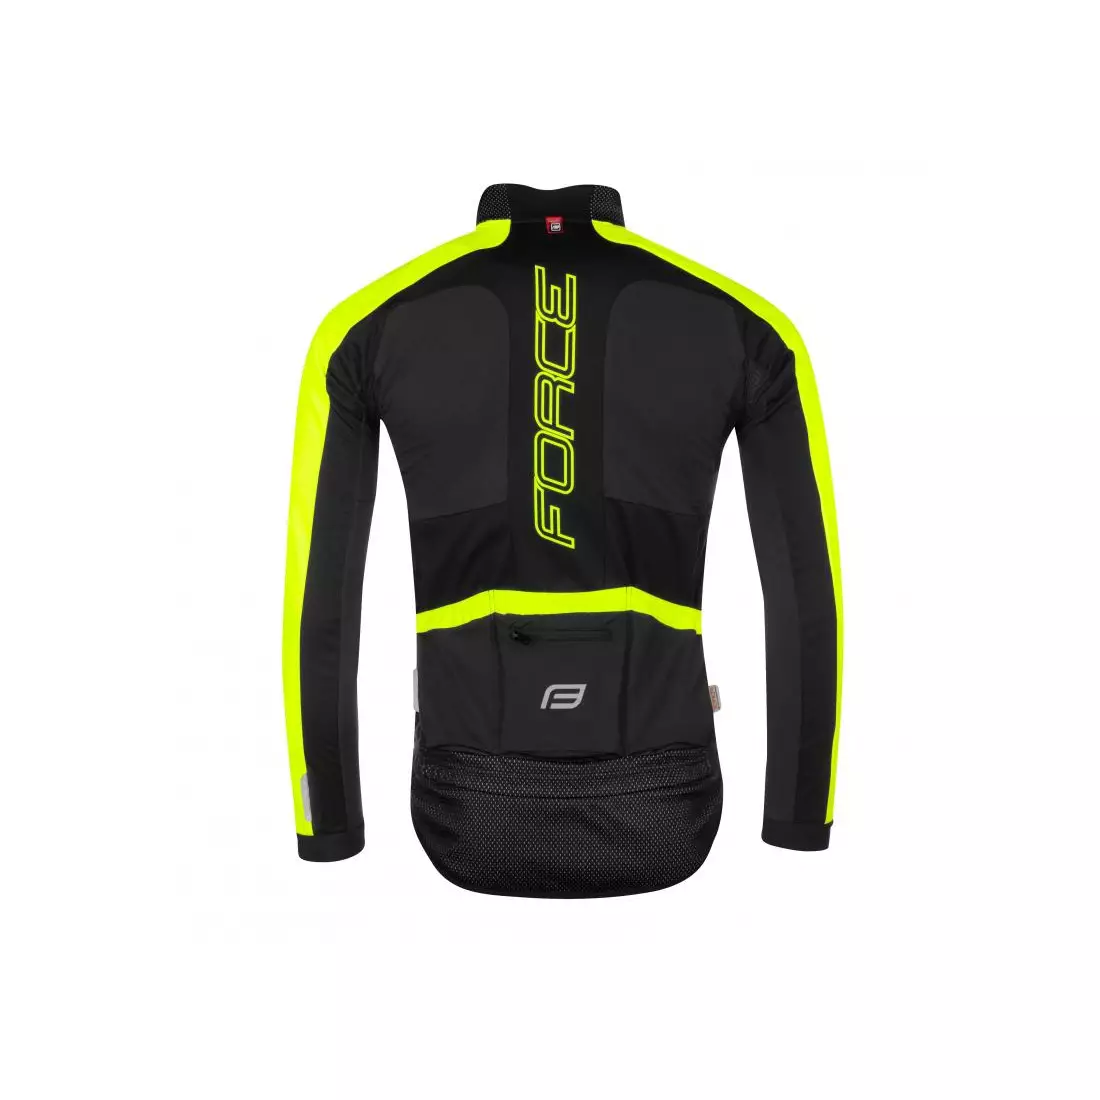 FORCE X100 zimní cyklistická bunda černá fluoro žlutá 899860